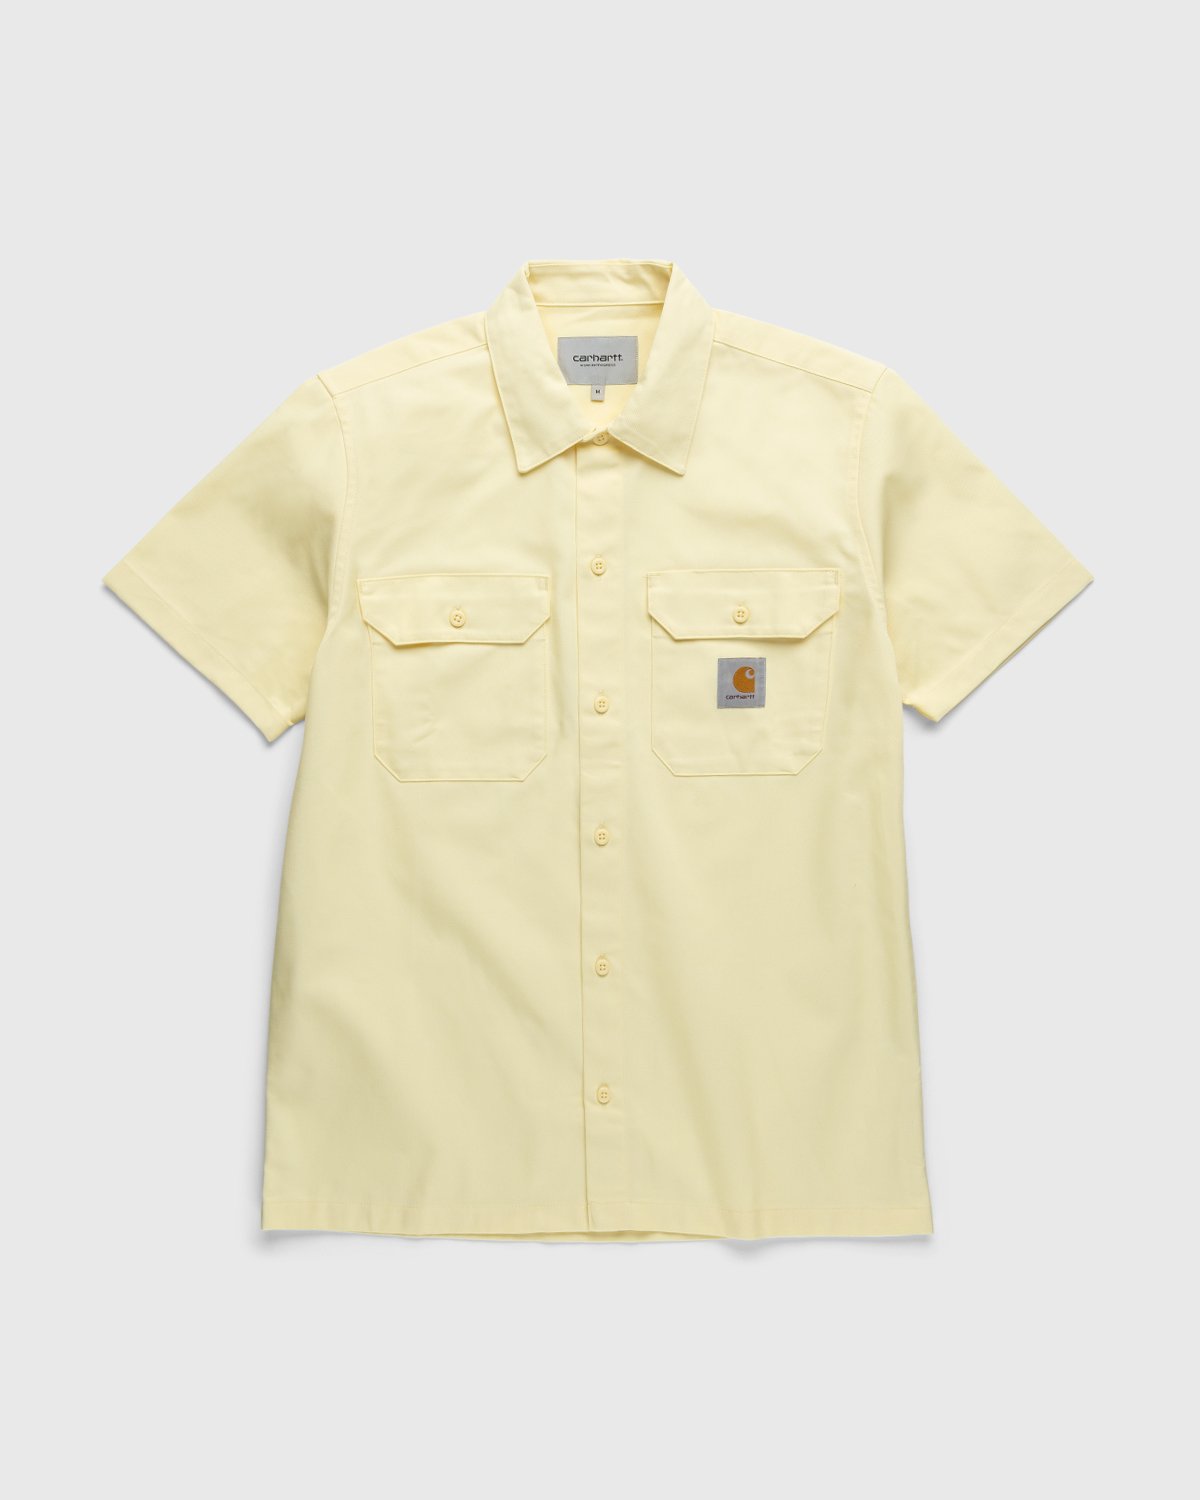 Carhartt WIP - Master Shirt Soft Yellow - Clothing - Yellow - Image 1